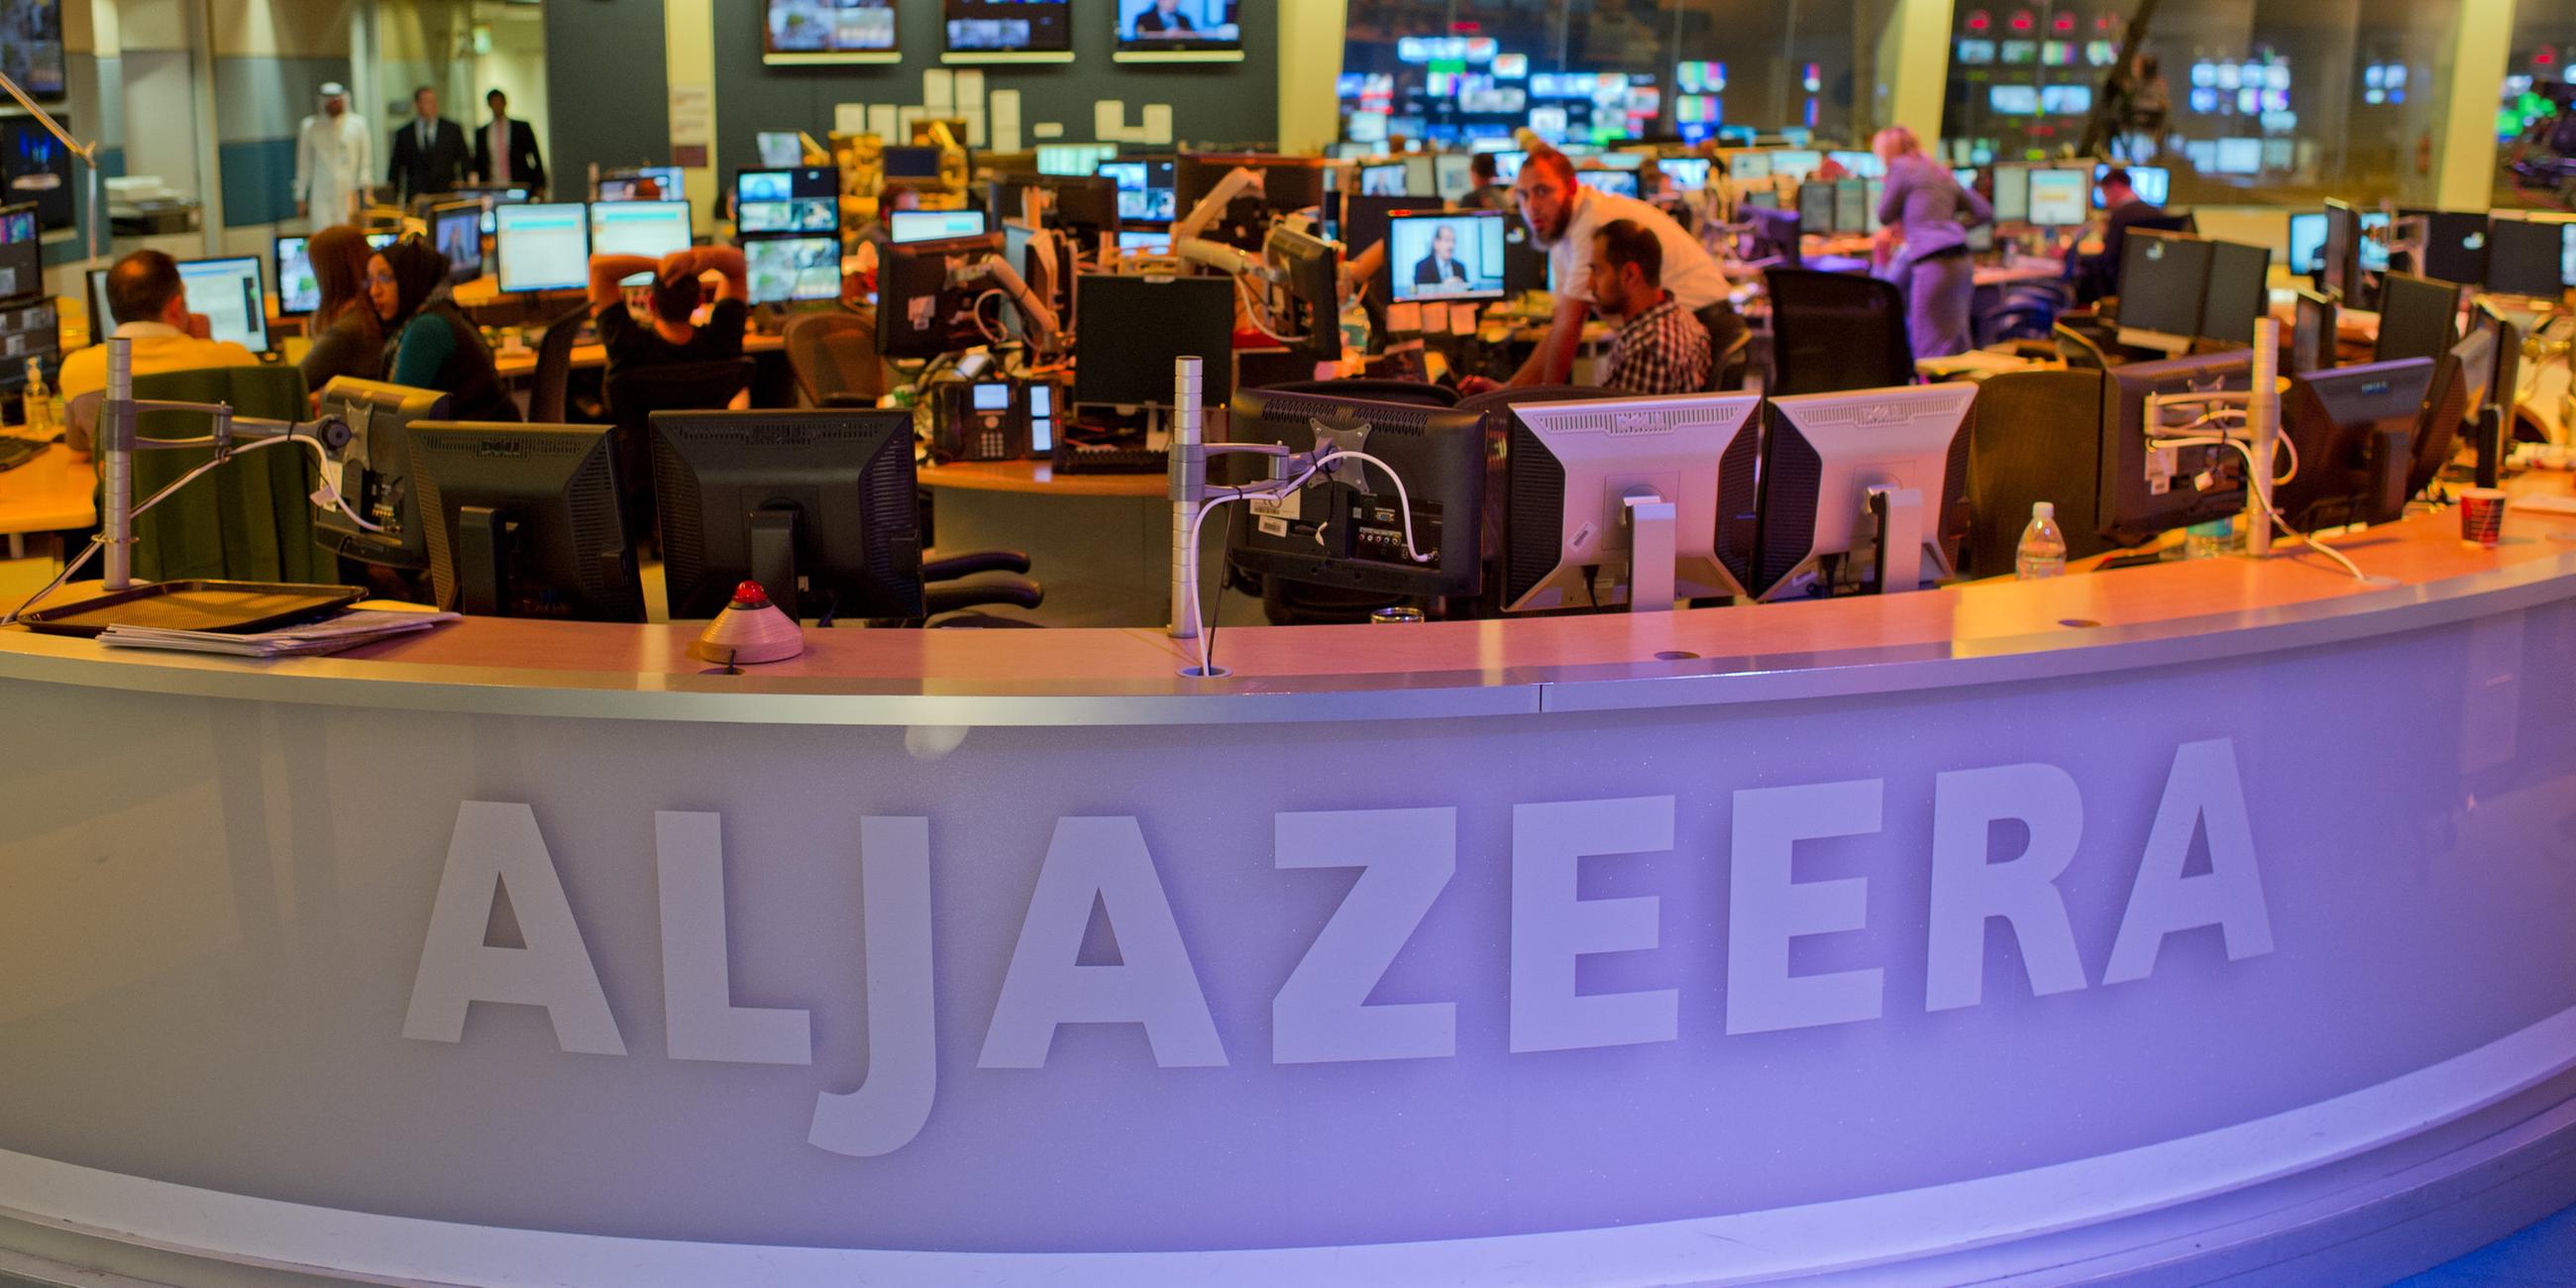 journalisten arbeiten am 05.06.2012 in doha, der hauptstadt von katar, in einem newsroom des arabischen nachrichtensenders al-dschasira.